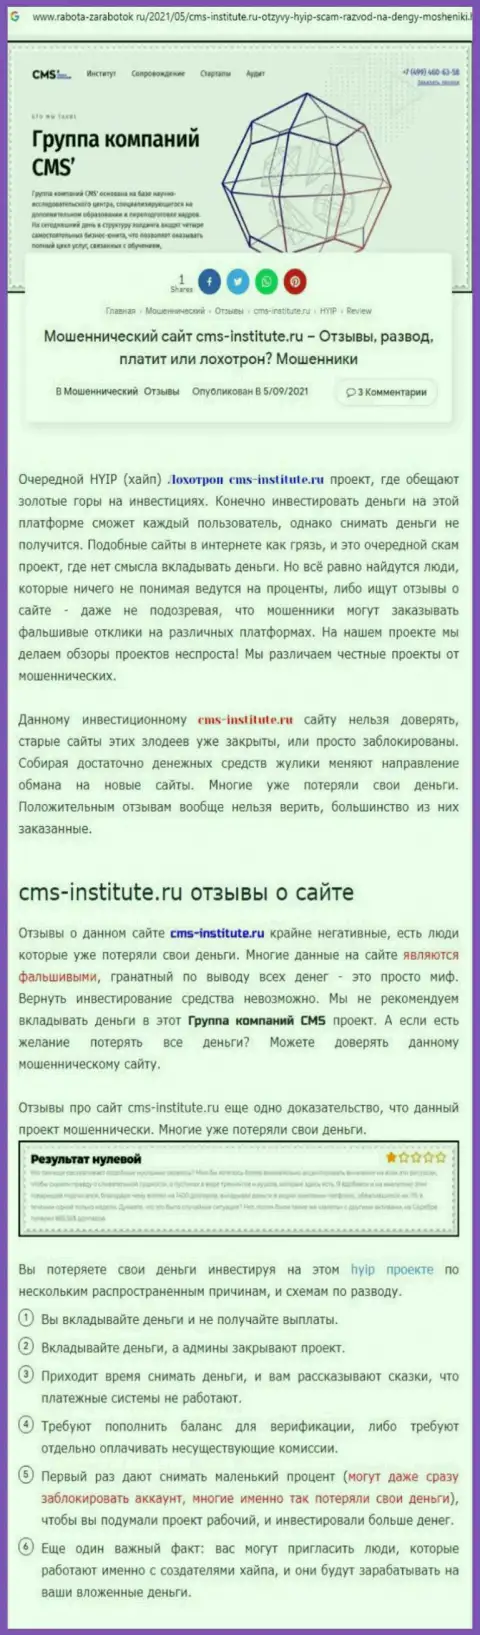 CMS-Institute Ru - это нахальный обман своих клиентов (обзор неправомерных комбинаций)